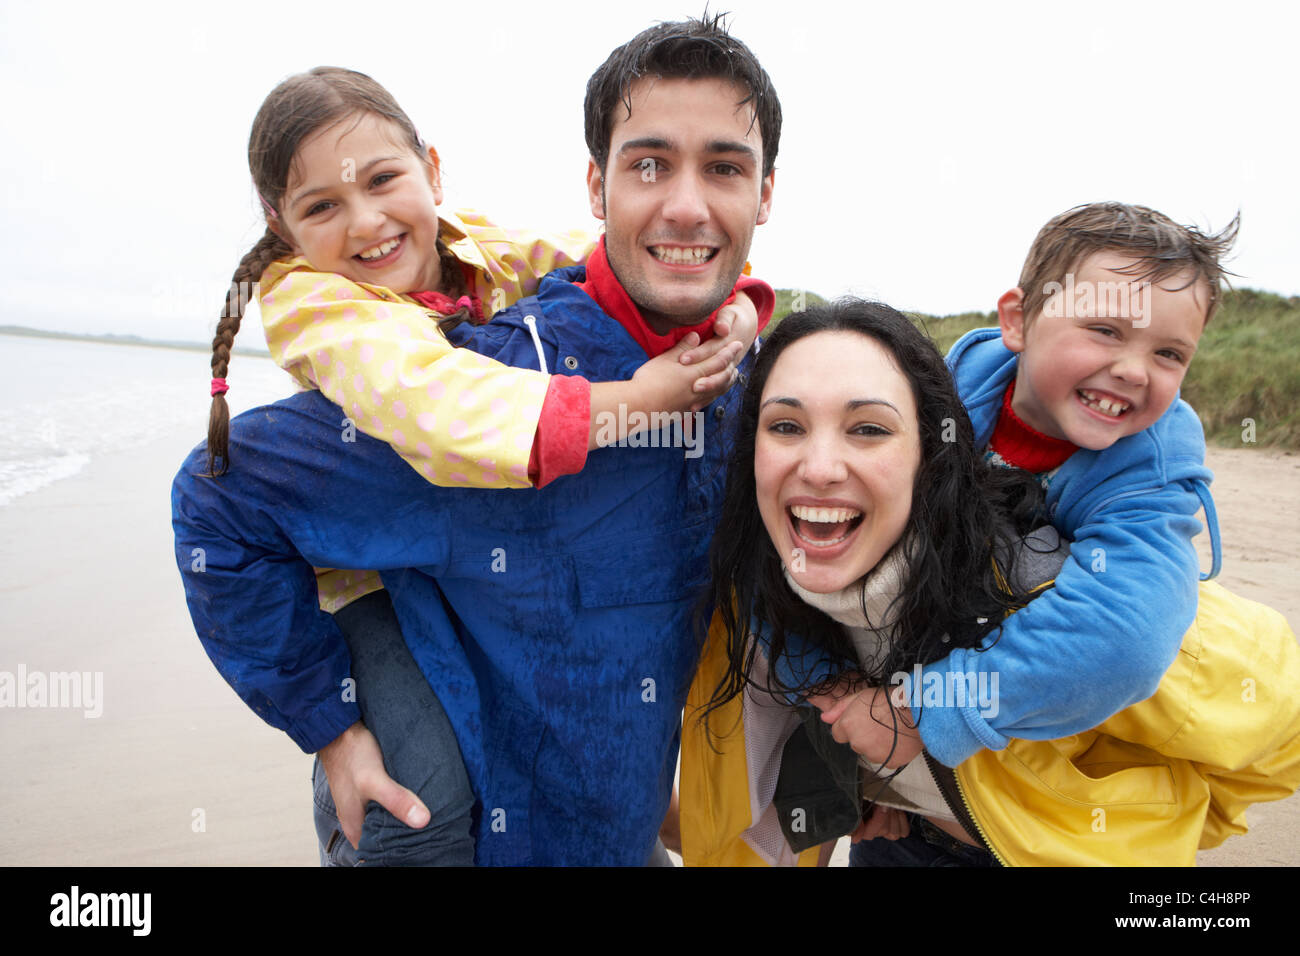 Happy family on beach Stock Photo